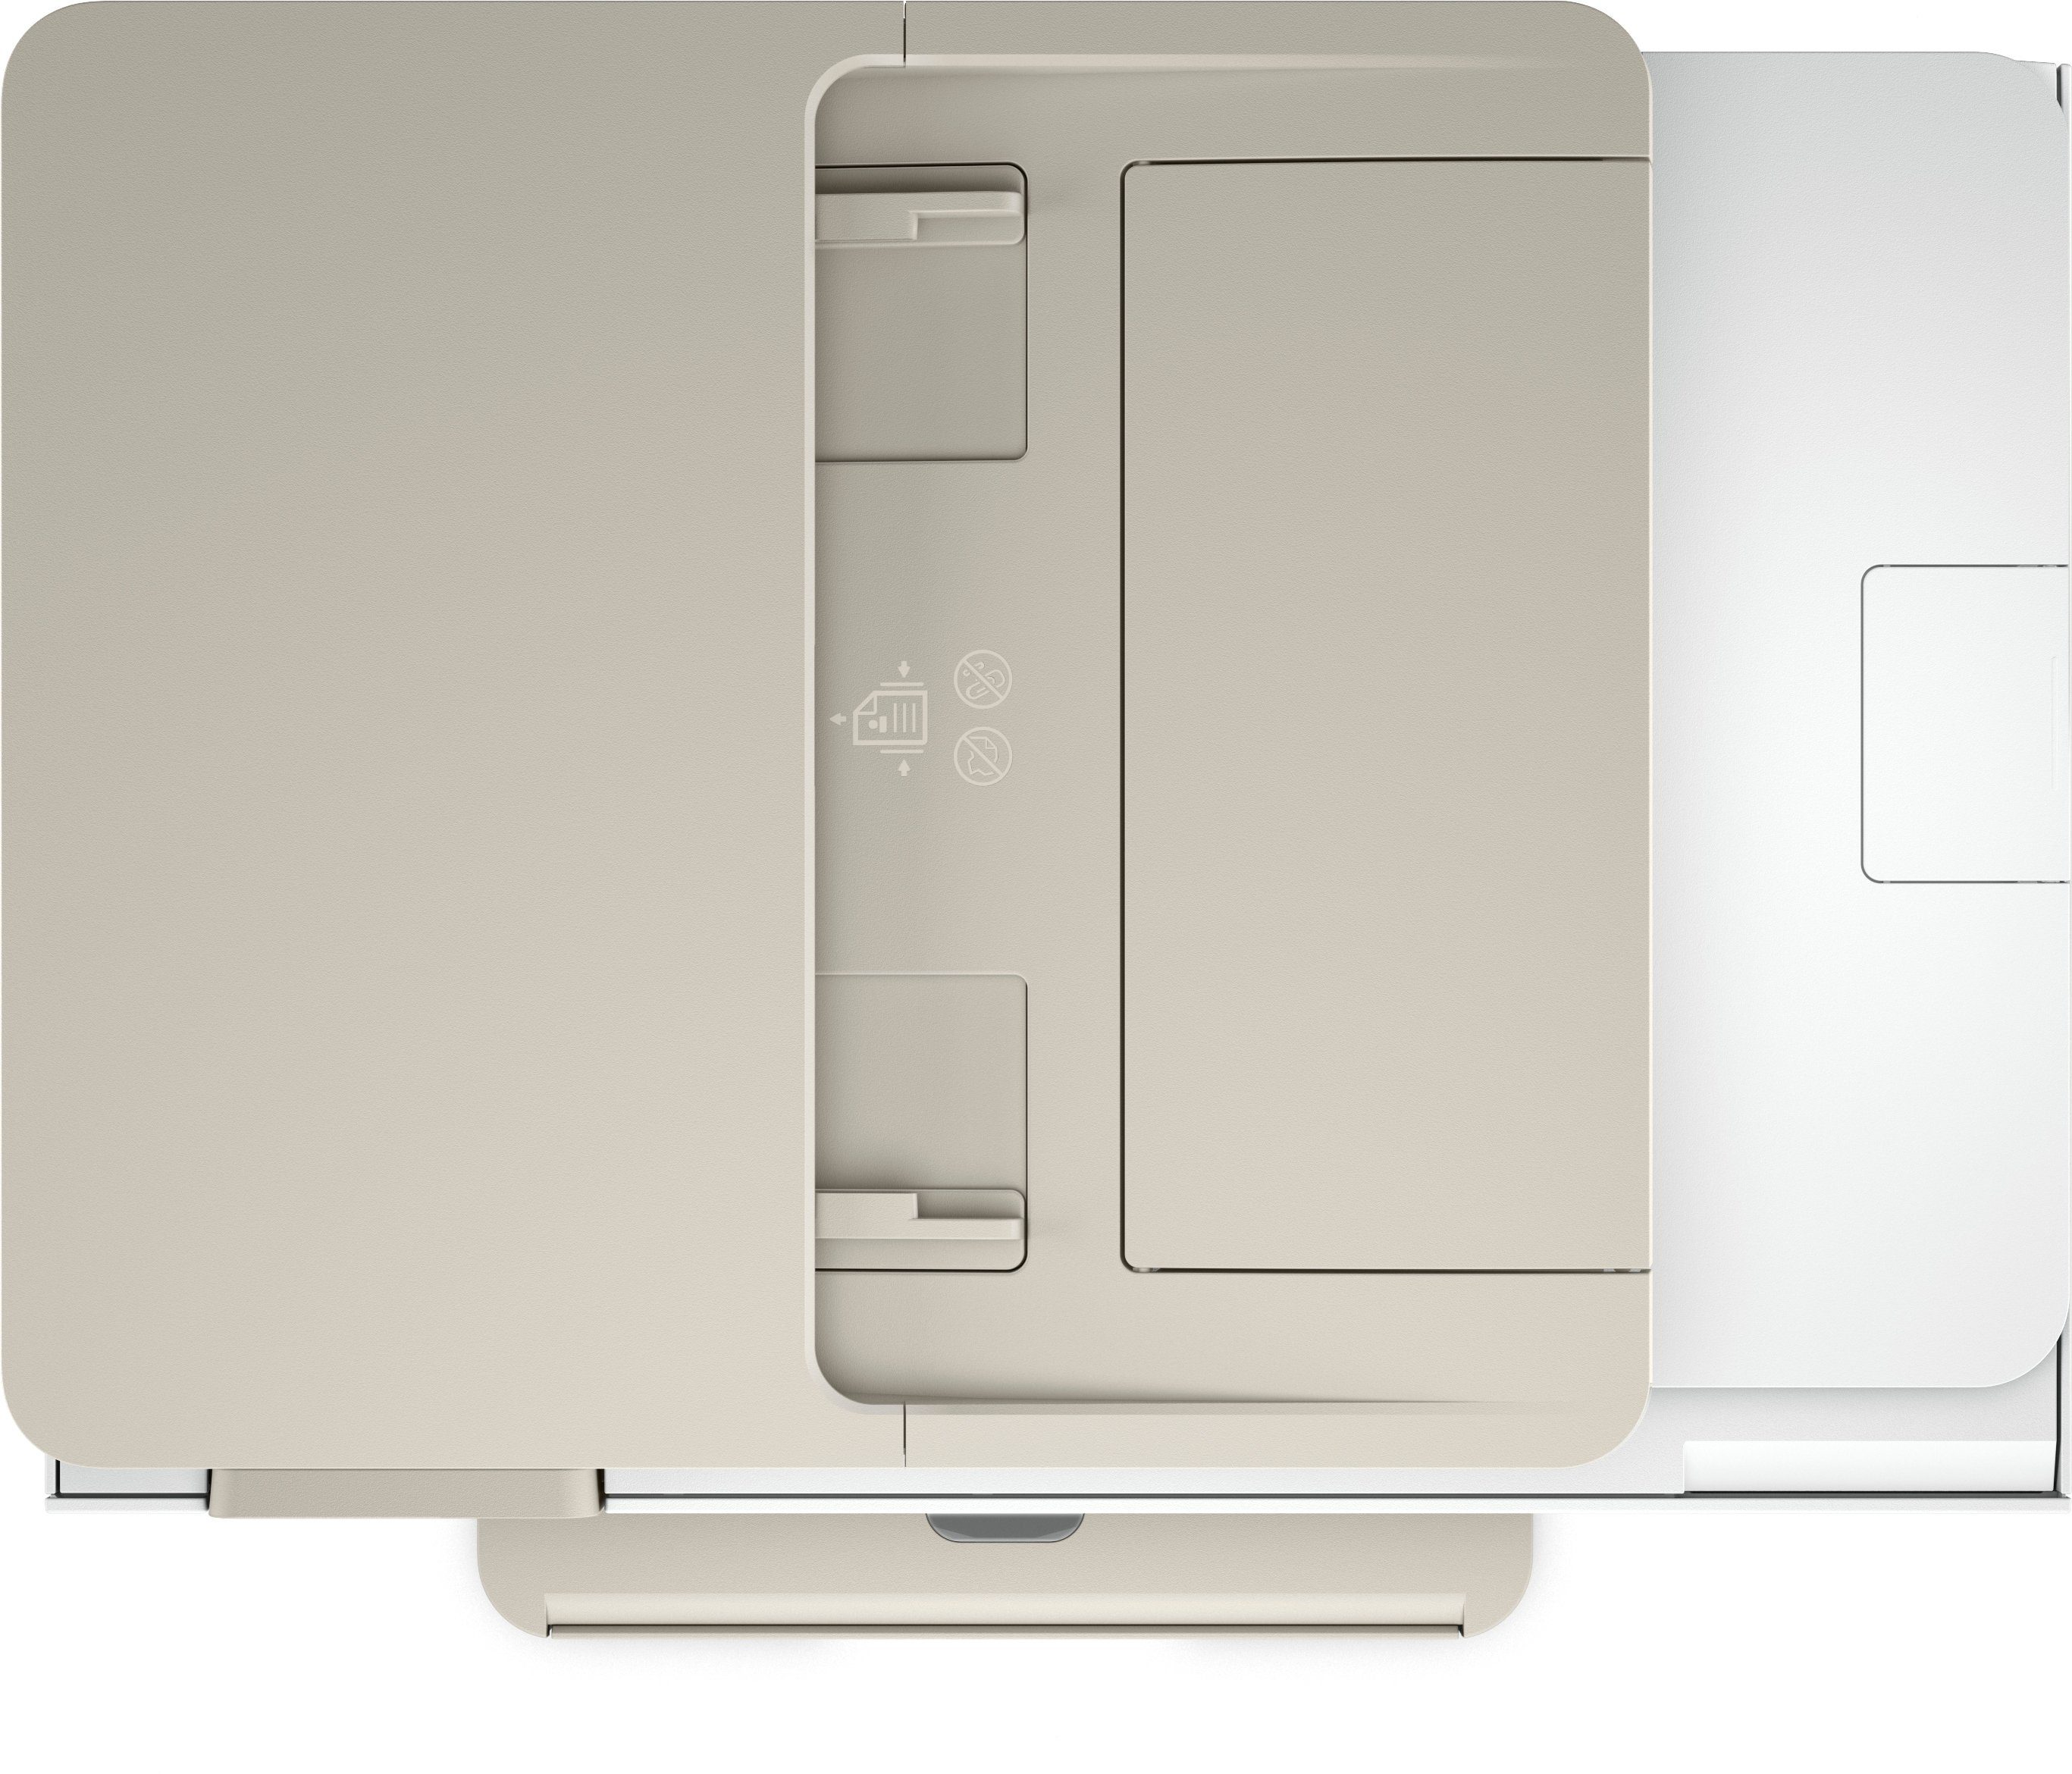 HP ENVY Inspire WLAN Instant (Wi-Fi), All-in-One-Drucker kompatibel) (Bluetooth, Ink 7920e Multifunktionsdrucker, HP